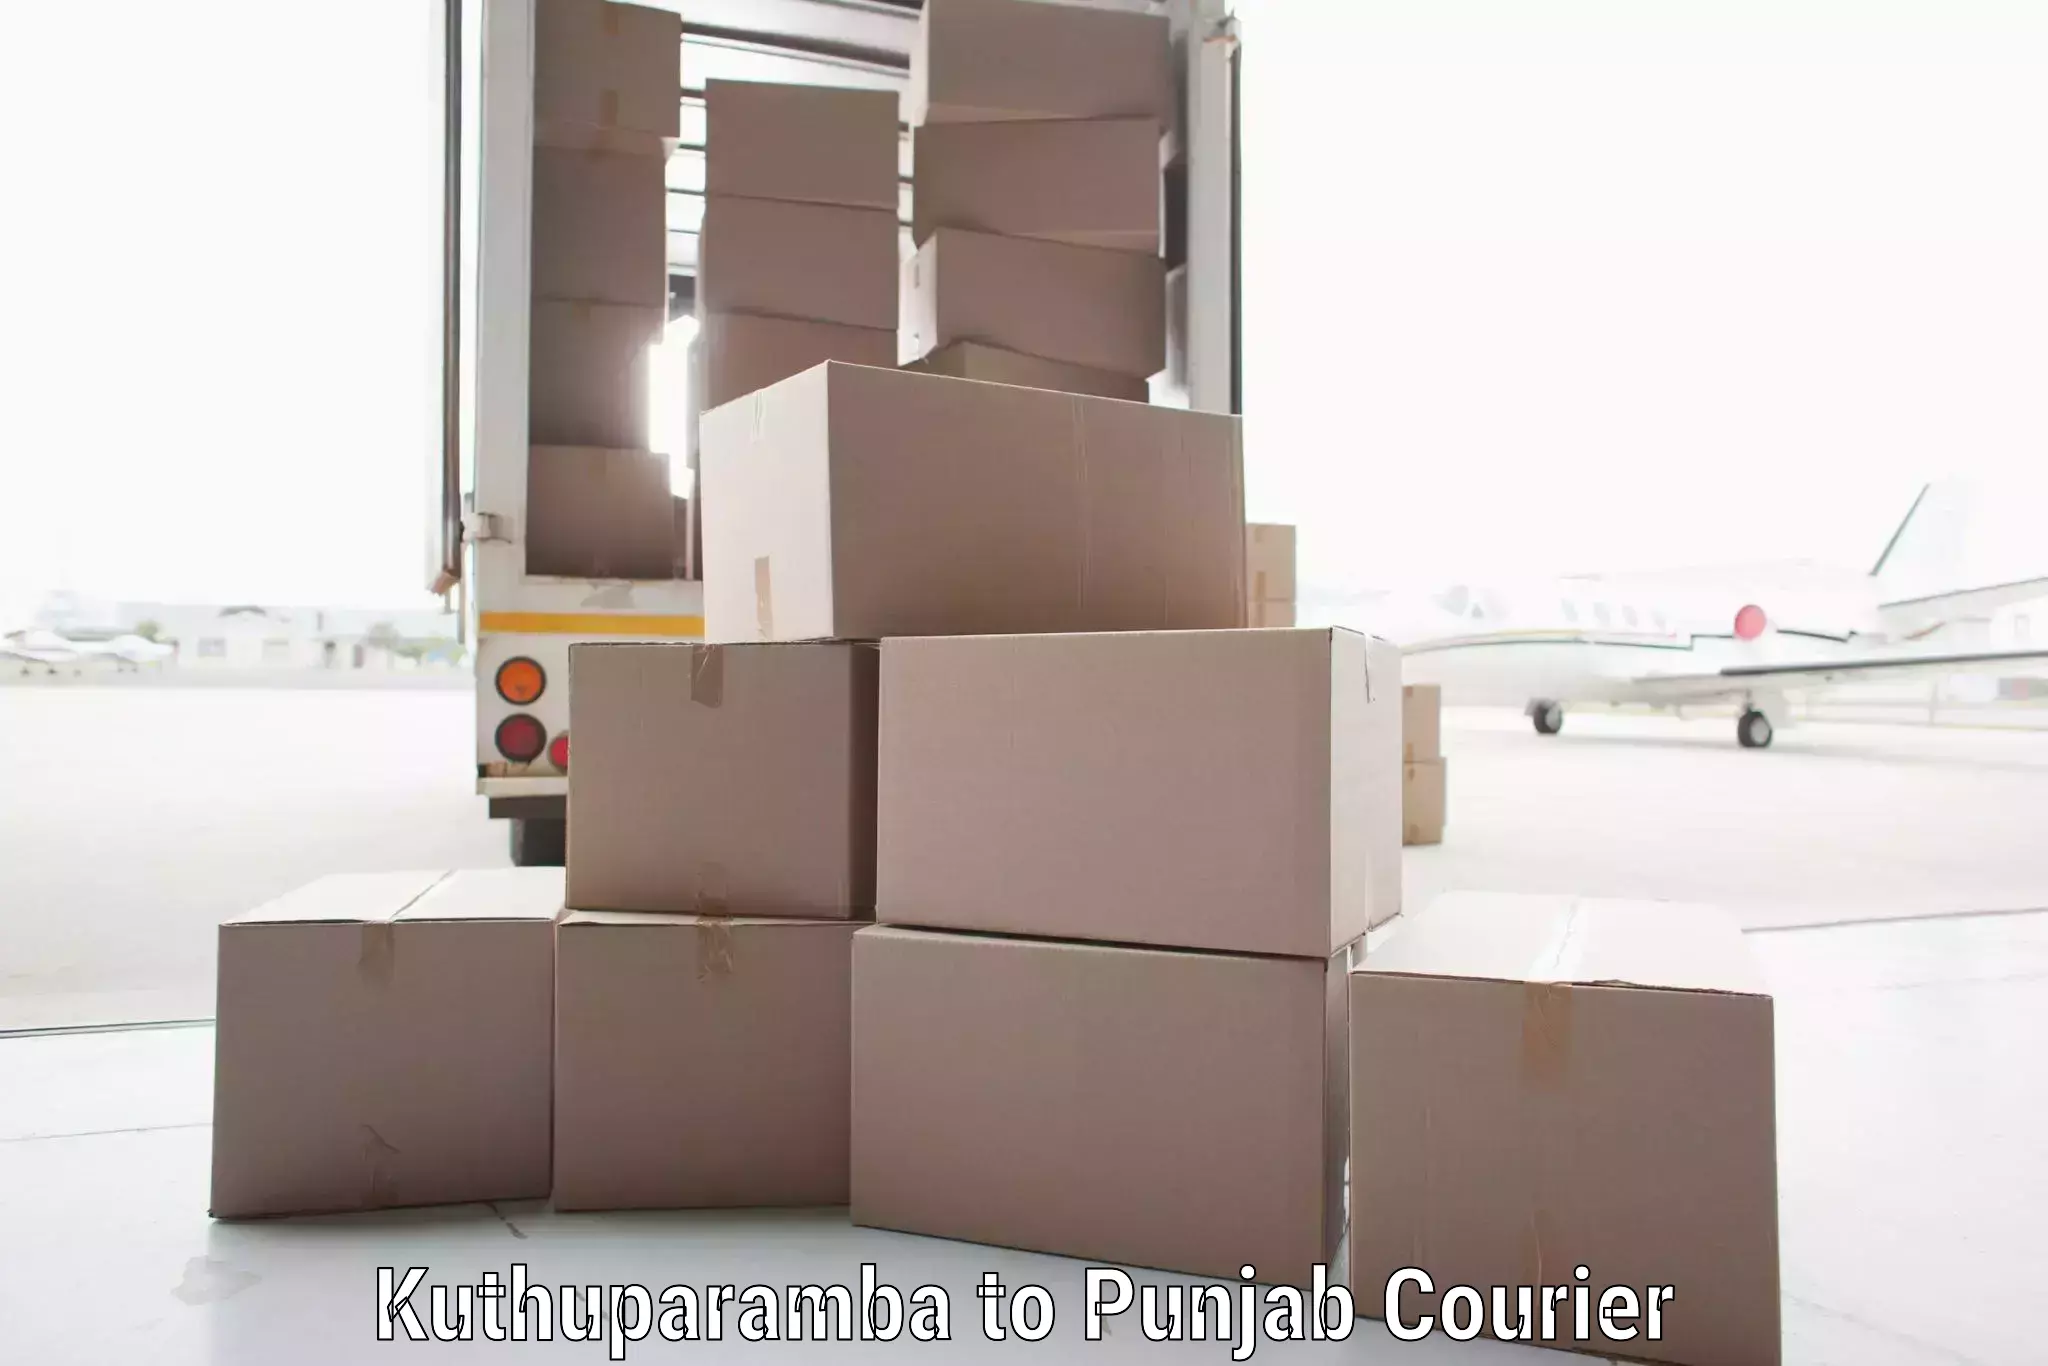 Efficient cargo services Kuthuparamba to Jalandhar